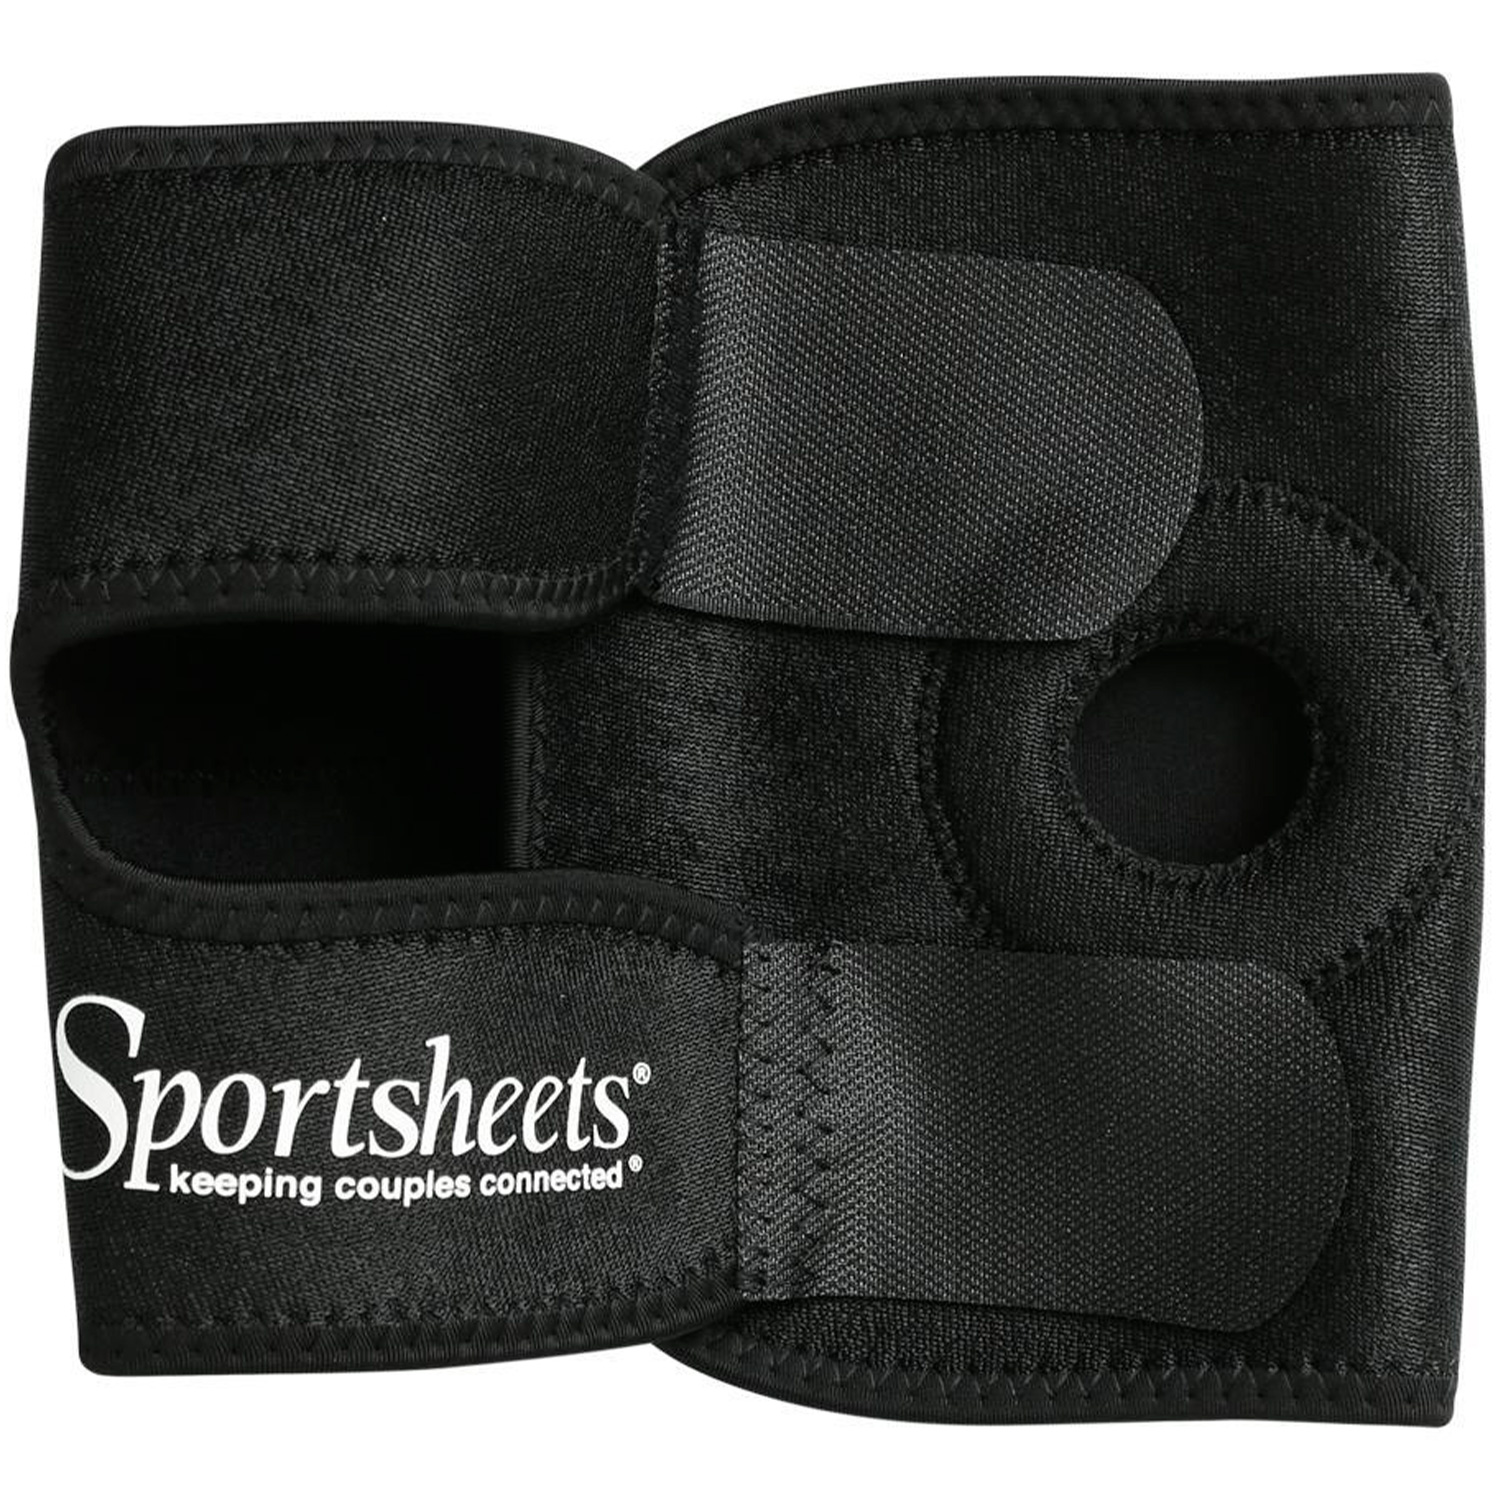 Sportsheets Strap-on Harness till Lår   - Svart